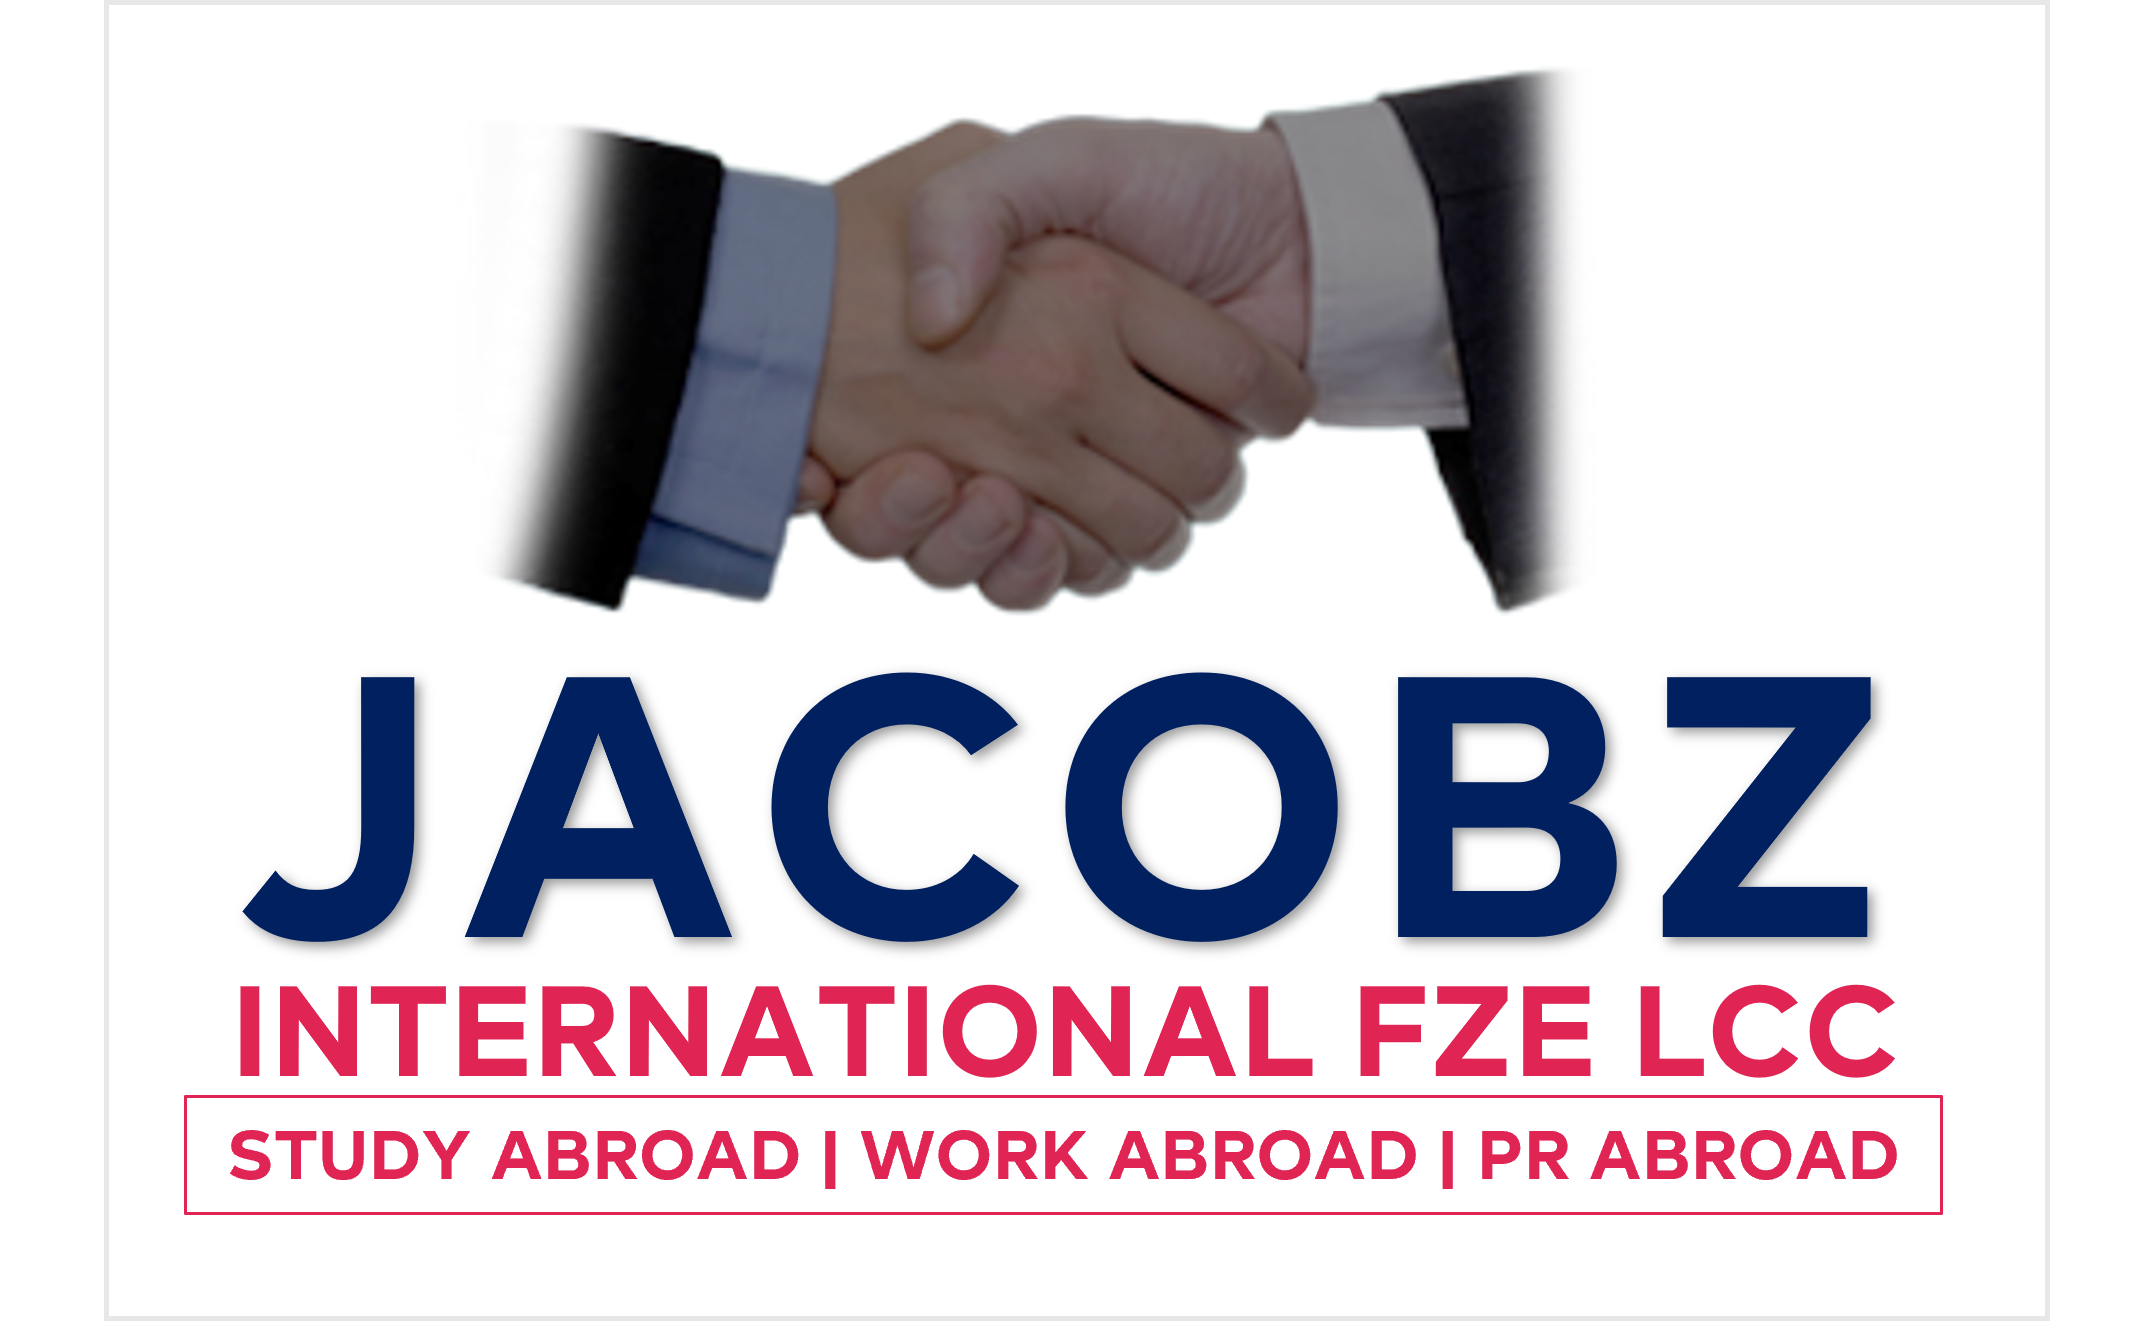 JACOBZ INTERNATIONAL FZE LCC